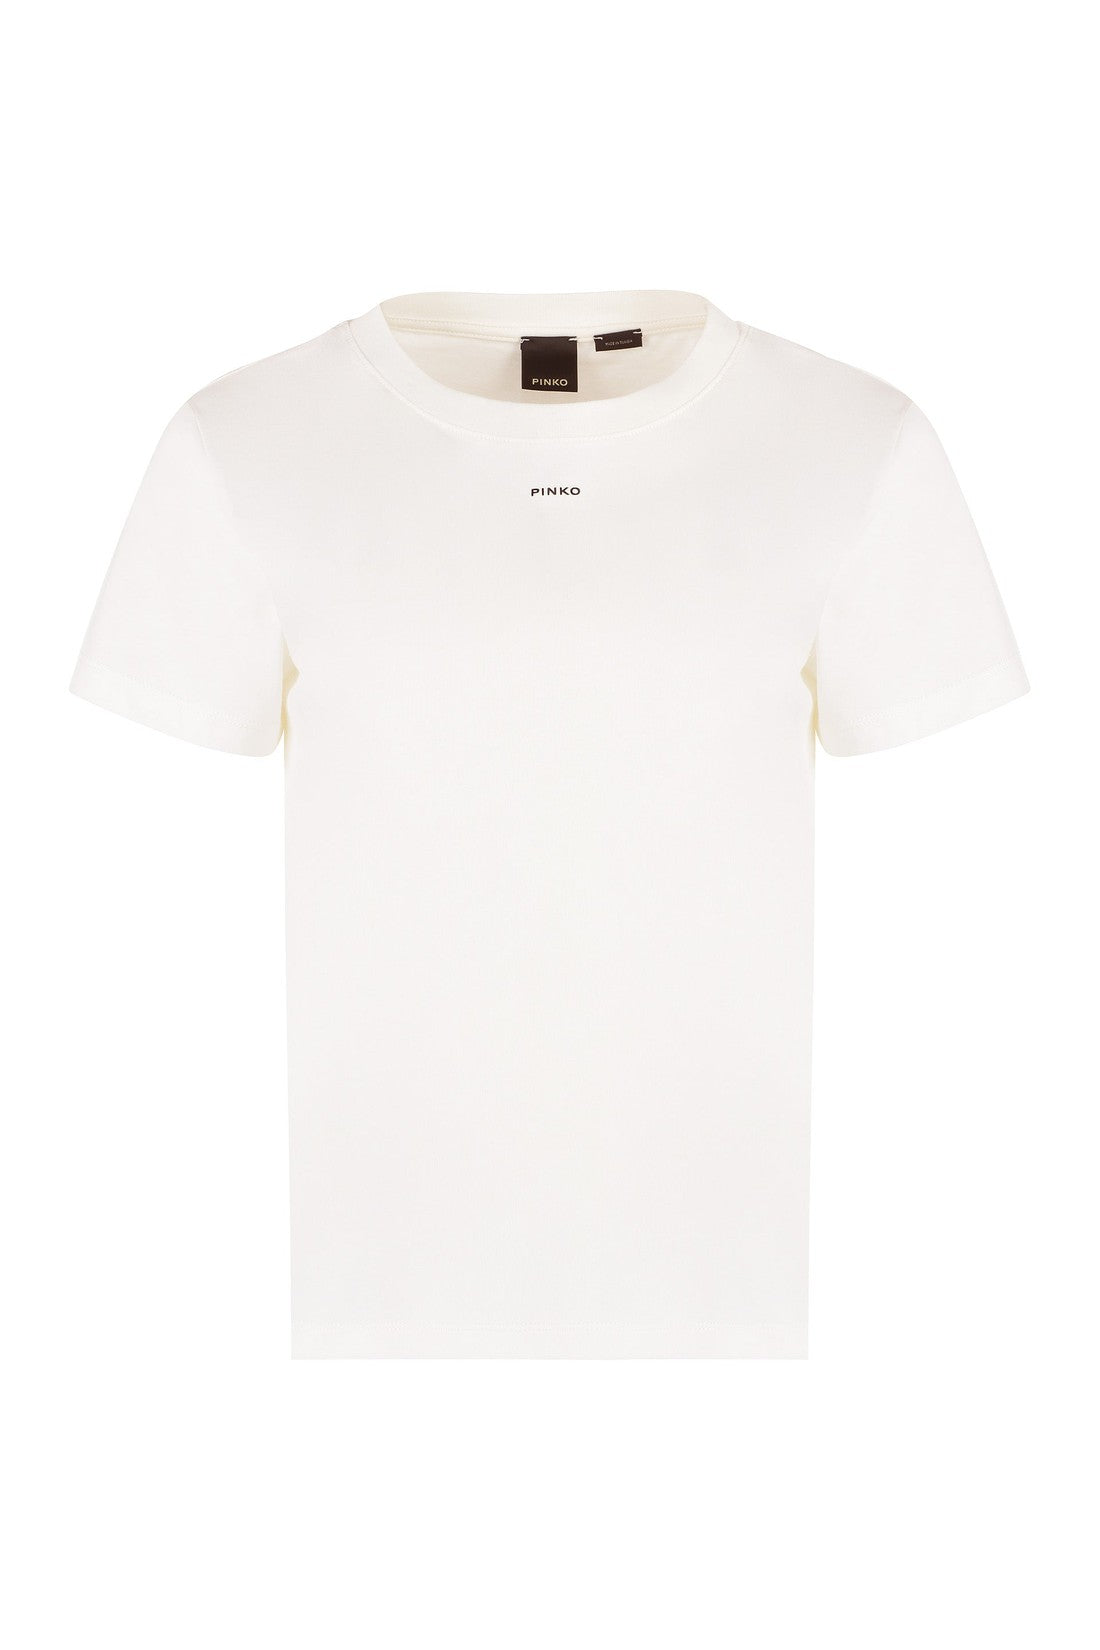 Pinko-OUTLET-SALE-Basico logo cotton t-shirt-ARCHIVIST